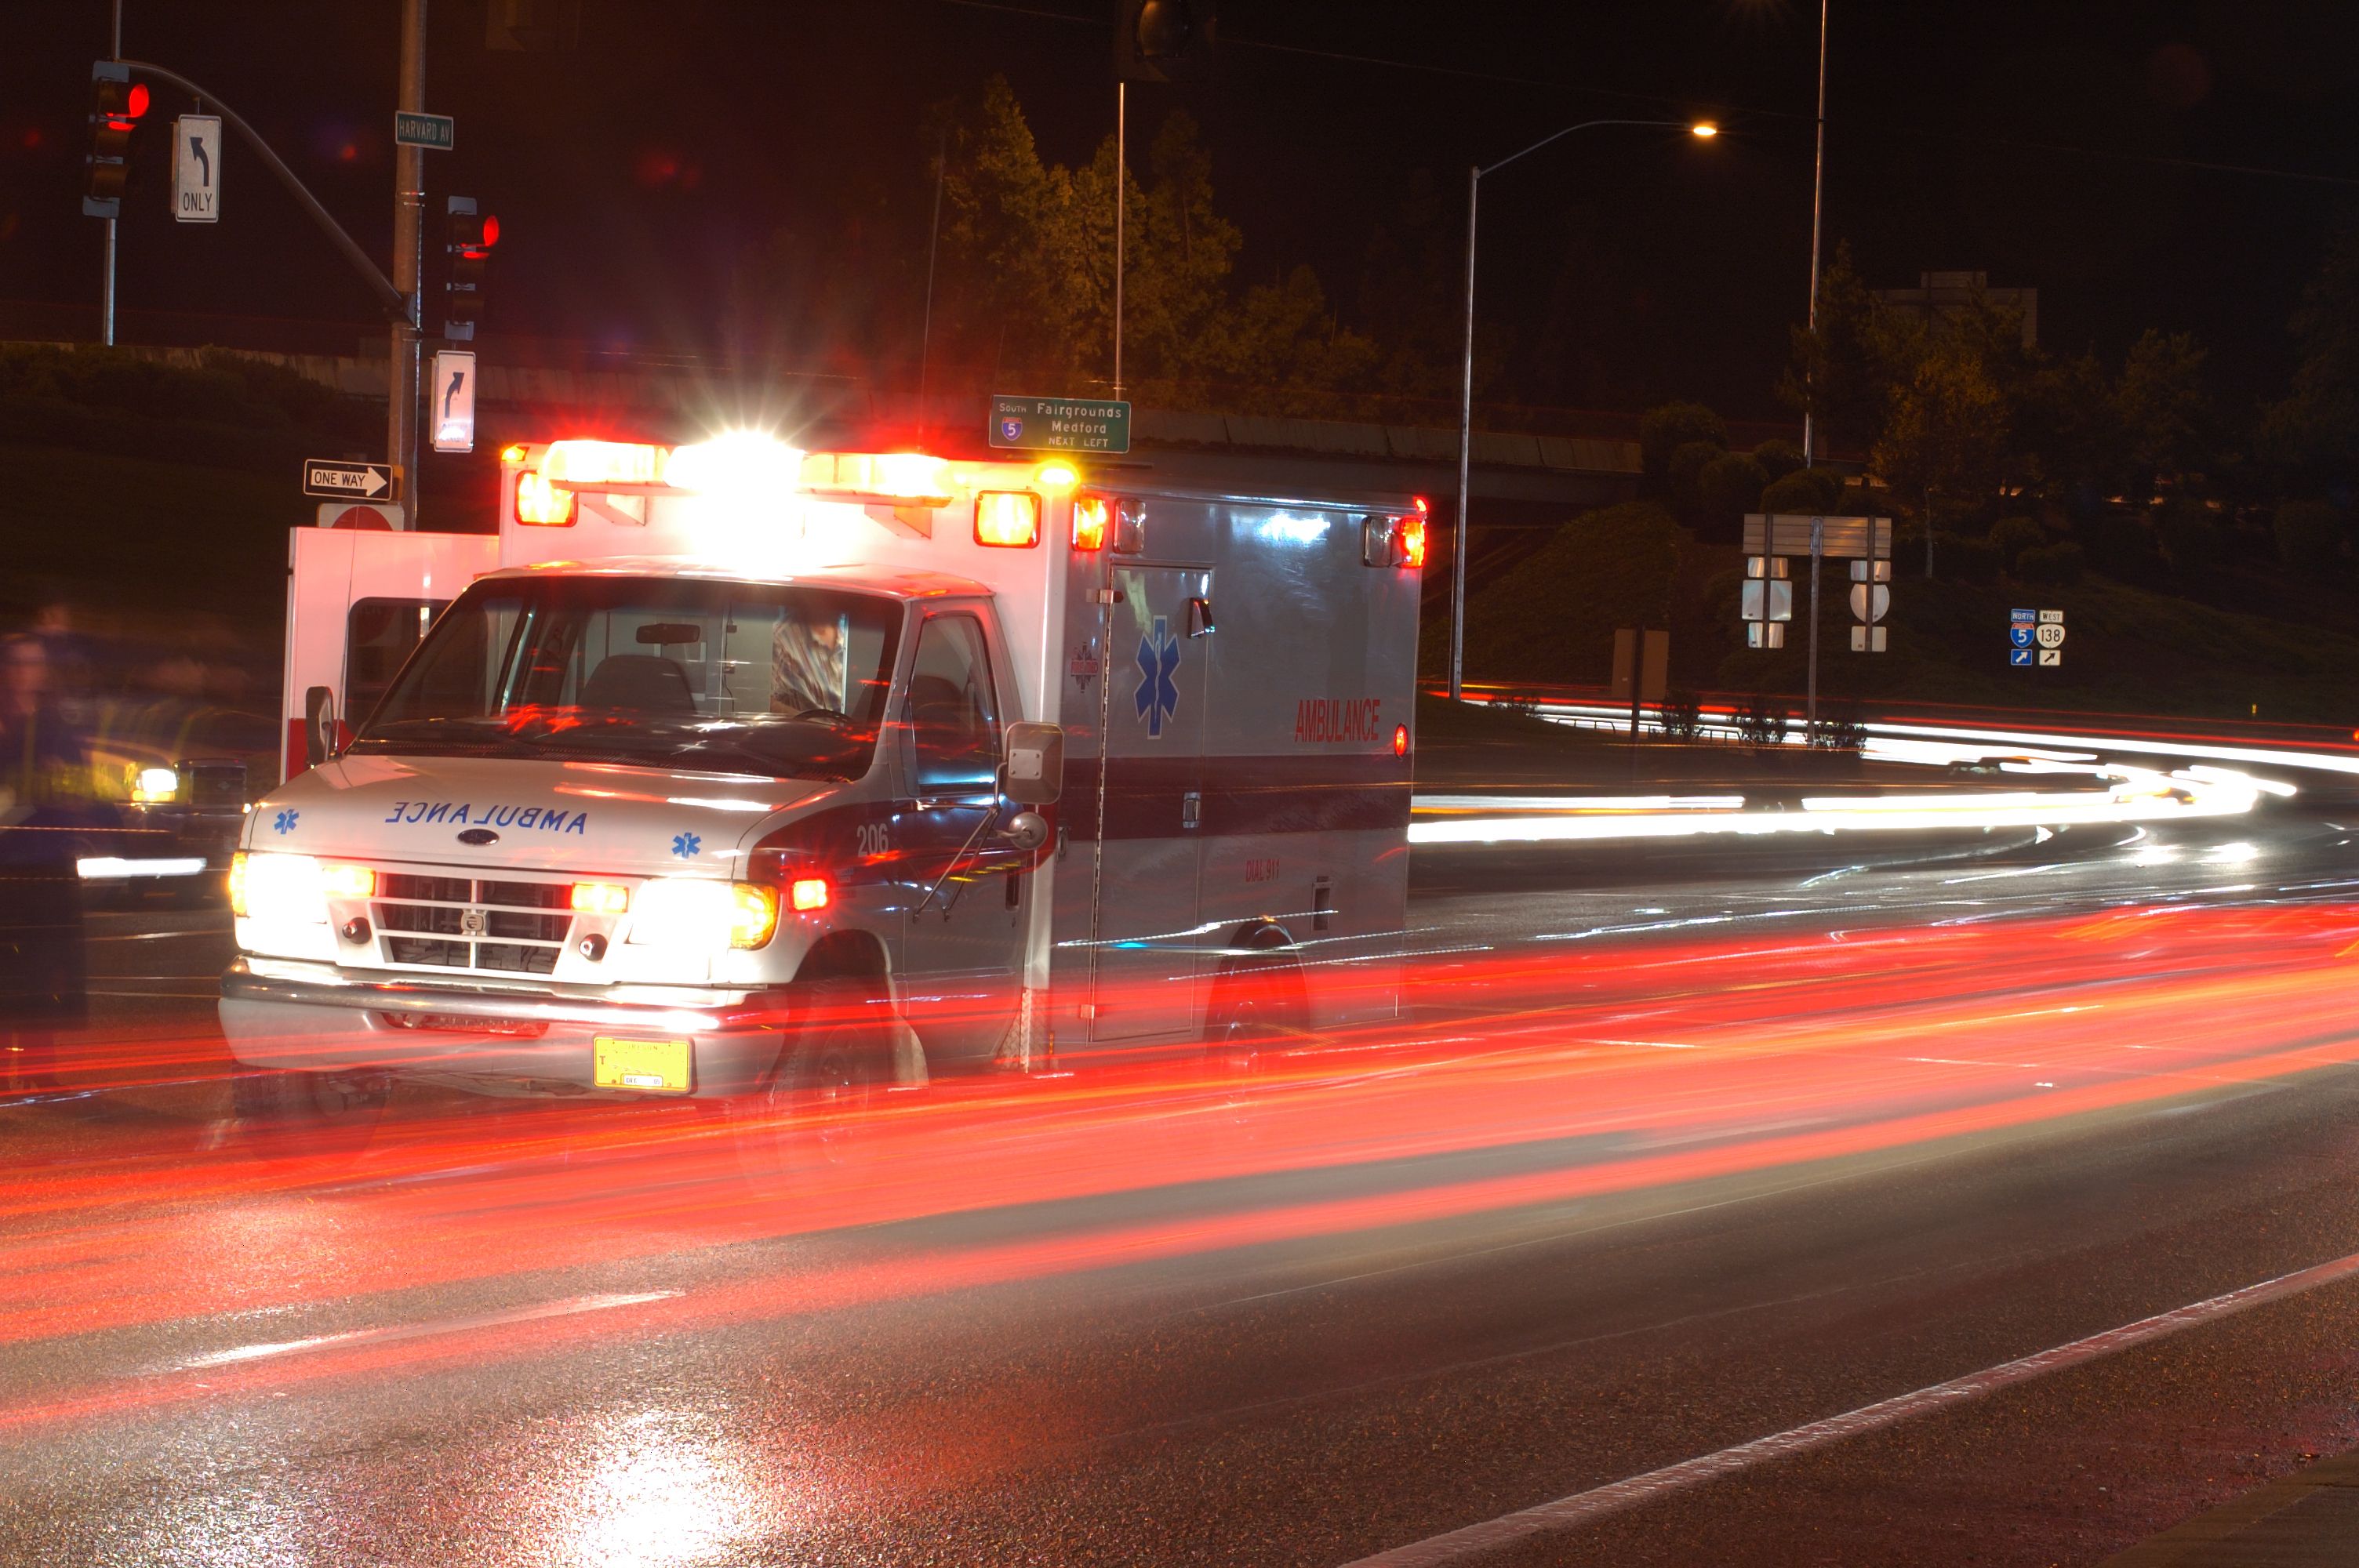 An ambulance drives through a street. | Source: Shutterstock